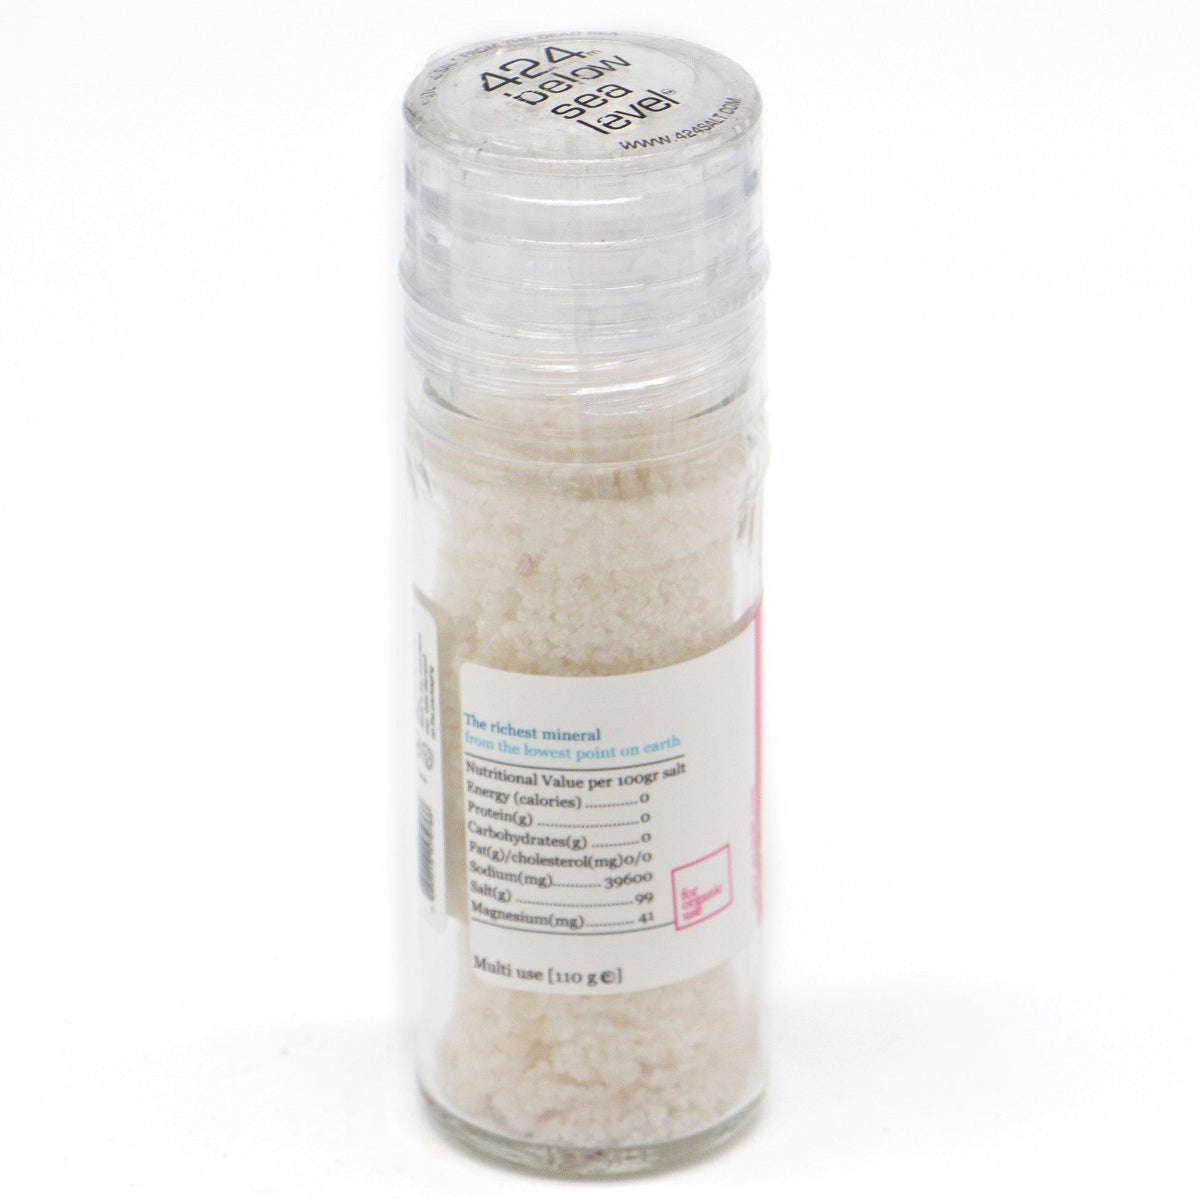 Diamond Gourmet Salt From The Dead Sea 3.87oz / 110 grams